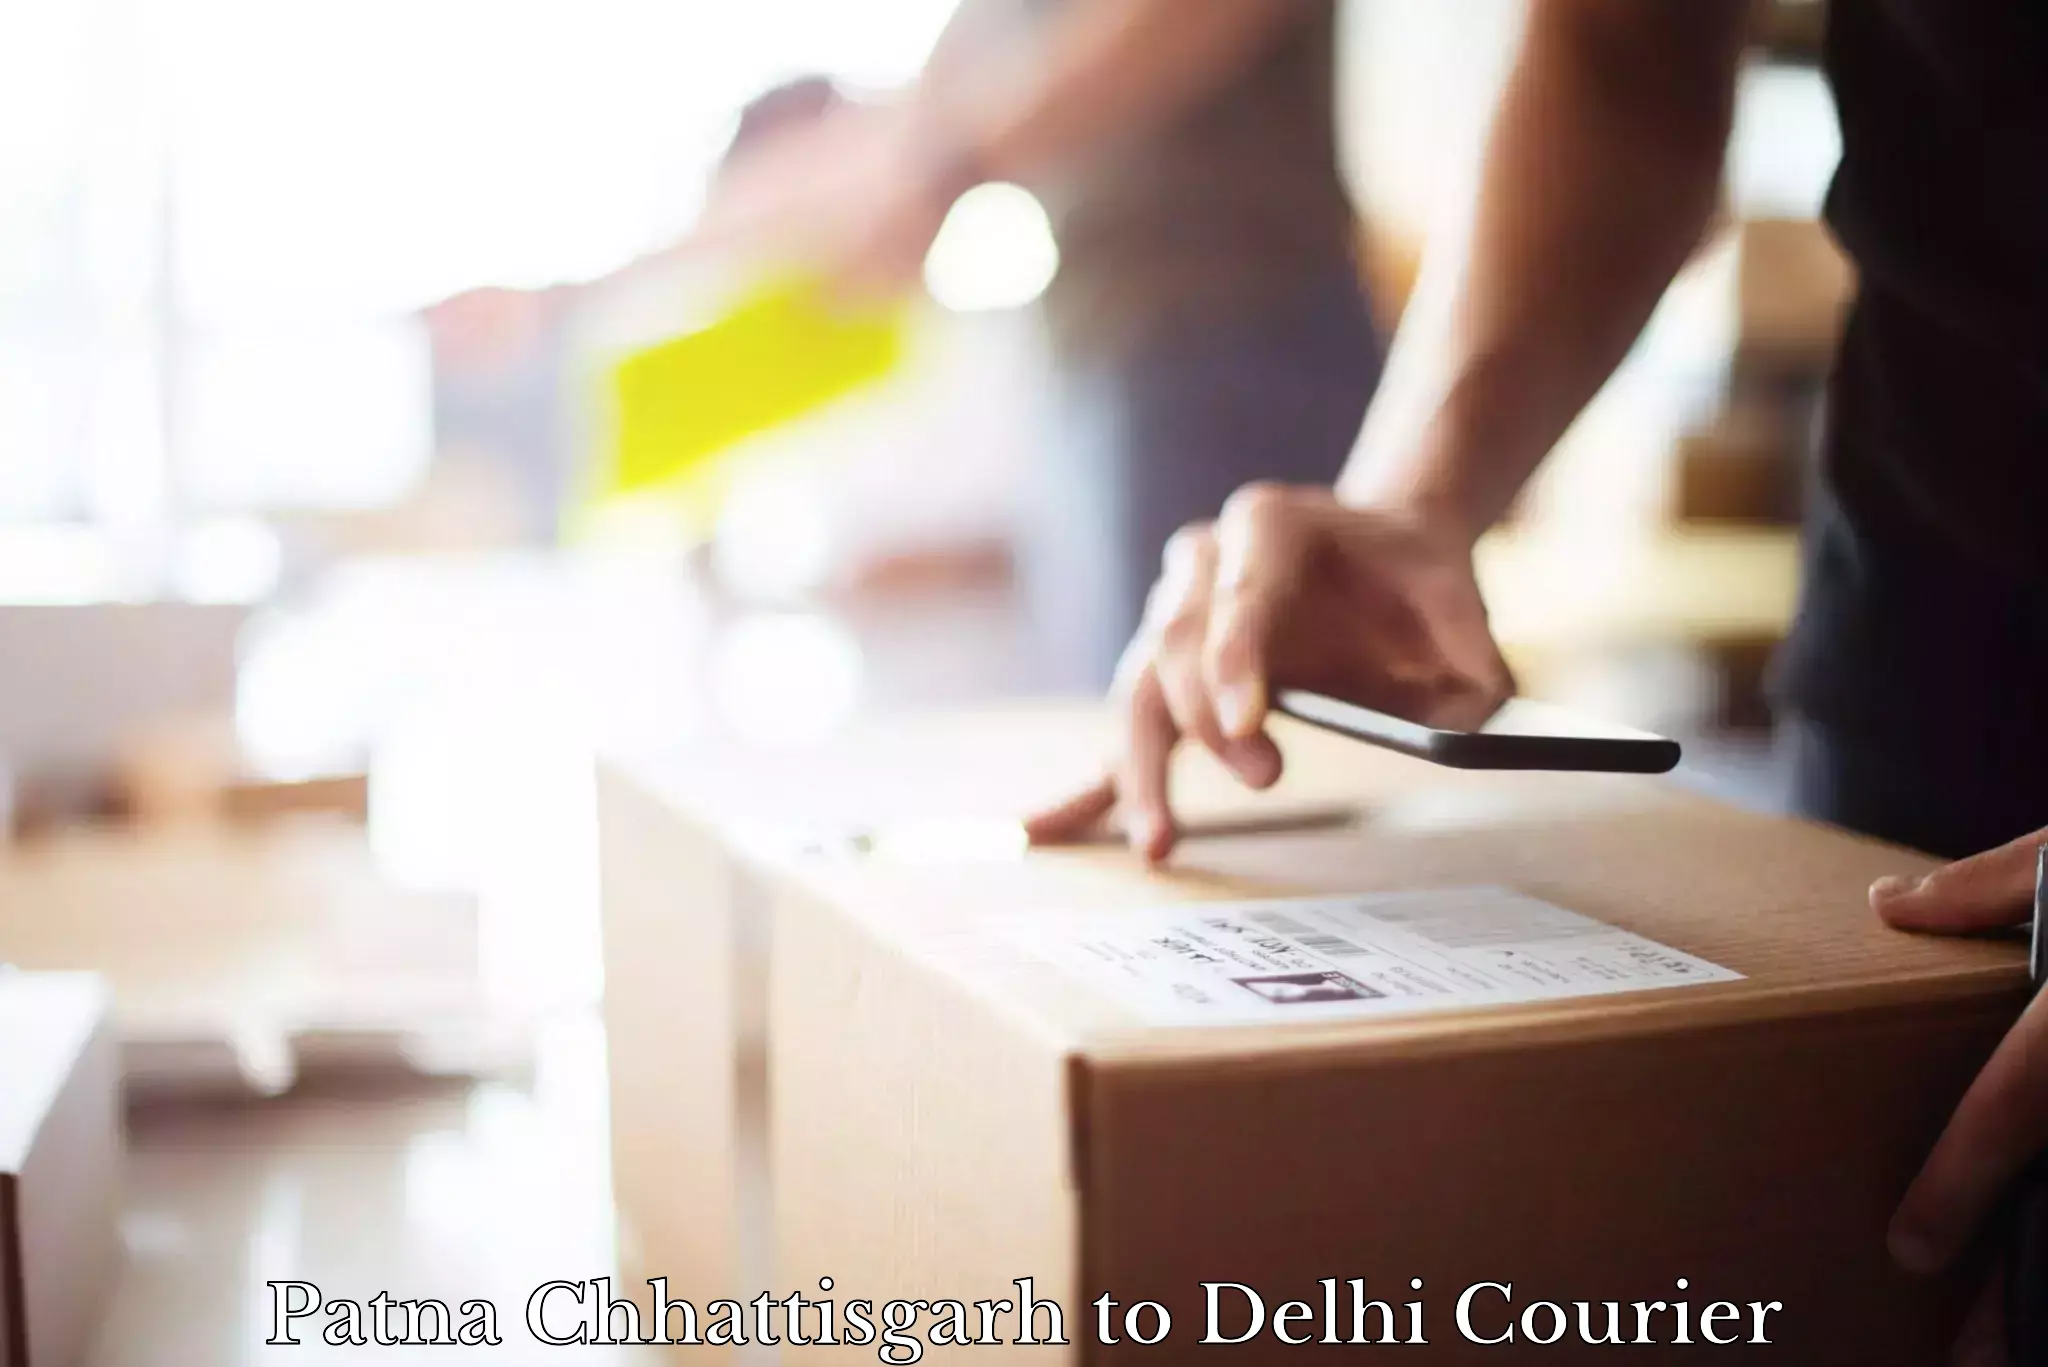 Fast delivery service Patna Chhattisgarh to NIT Delhi